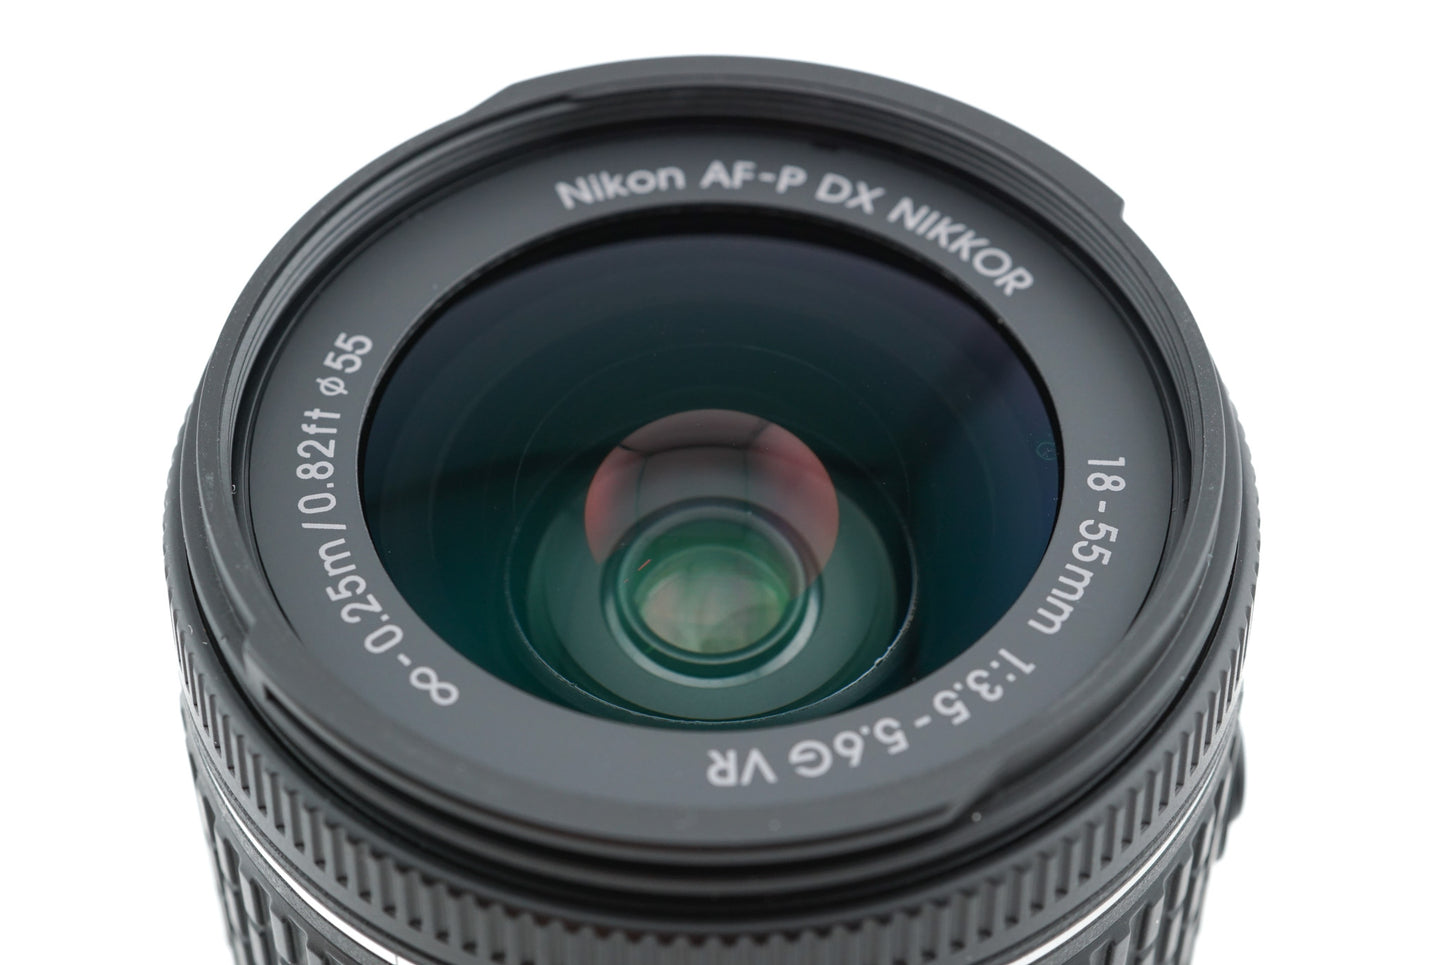 Nikon 18-55mm f3.5-5.6 G VR AF-P Nikkor